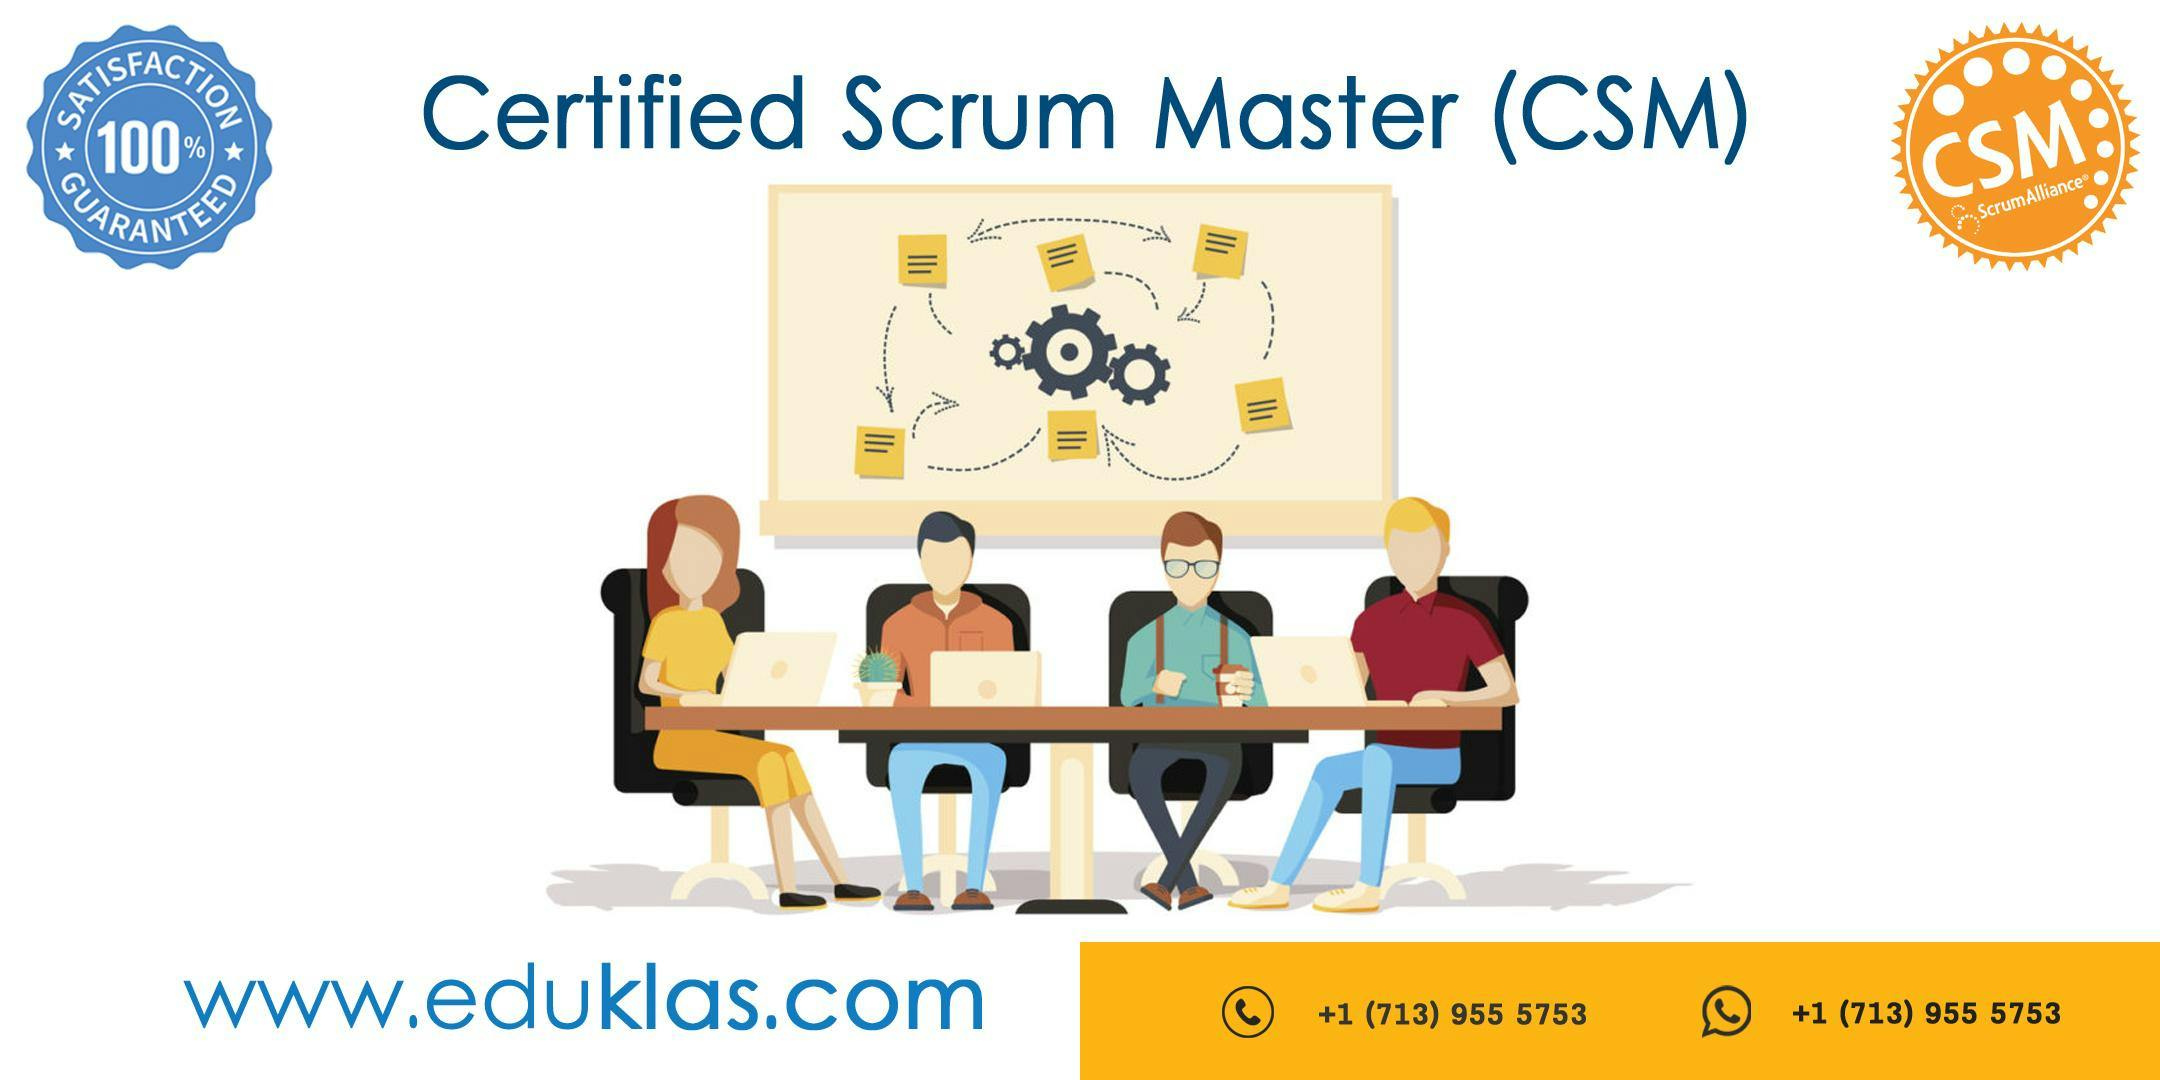 Scrum Master Certification | CSM Training | CSM Certification Workshop | Certified Scrum Master (CSM) Training in Santa Clara, CA | Eduklas